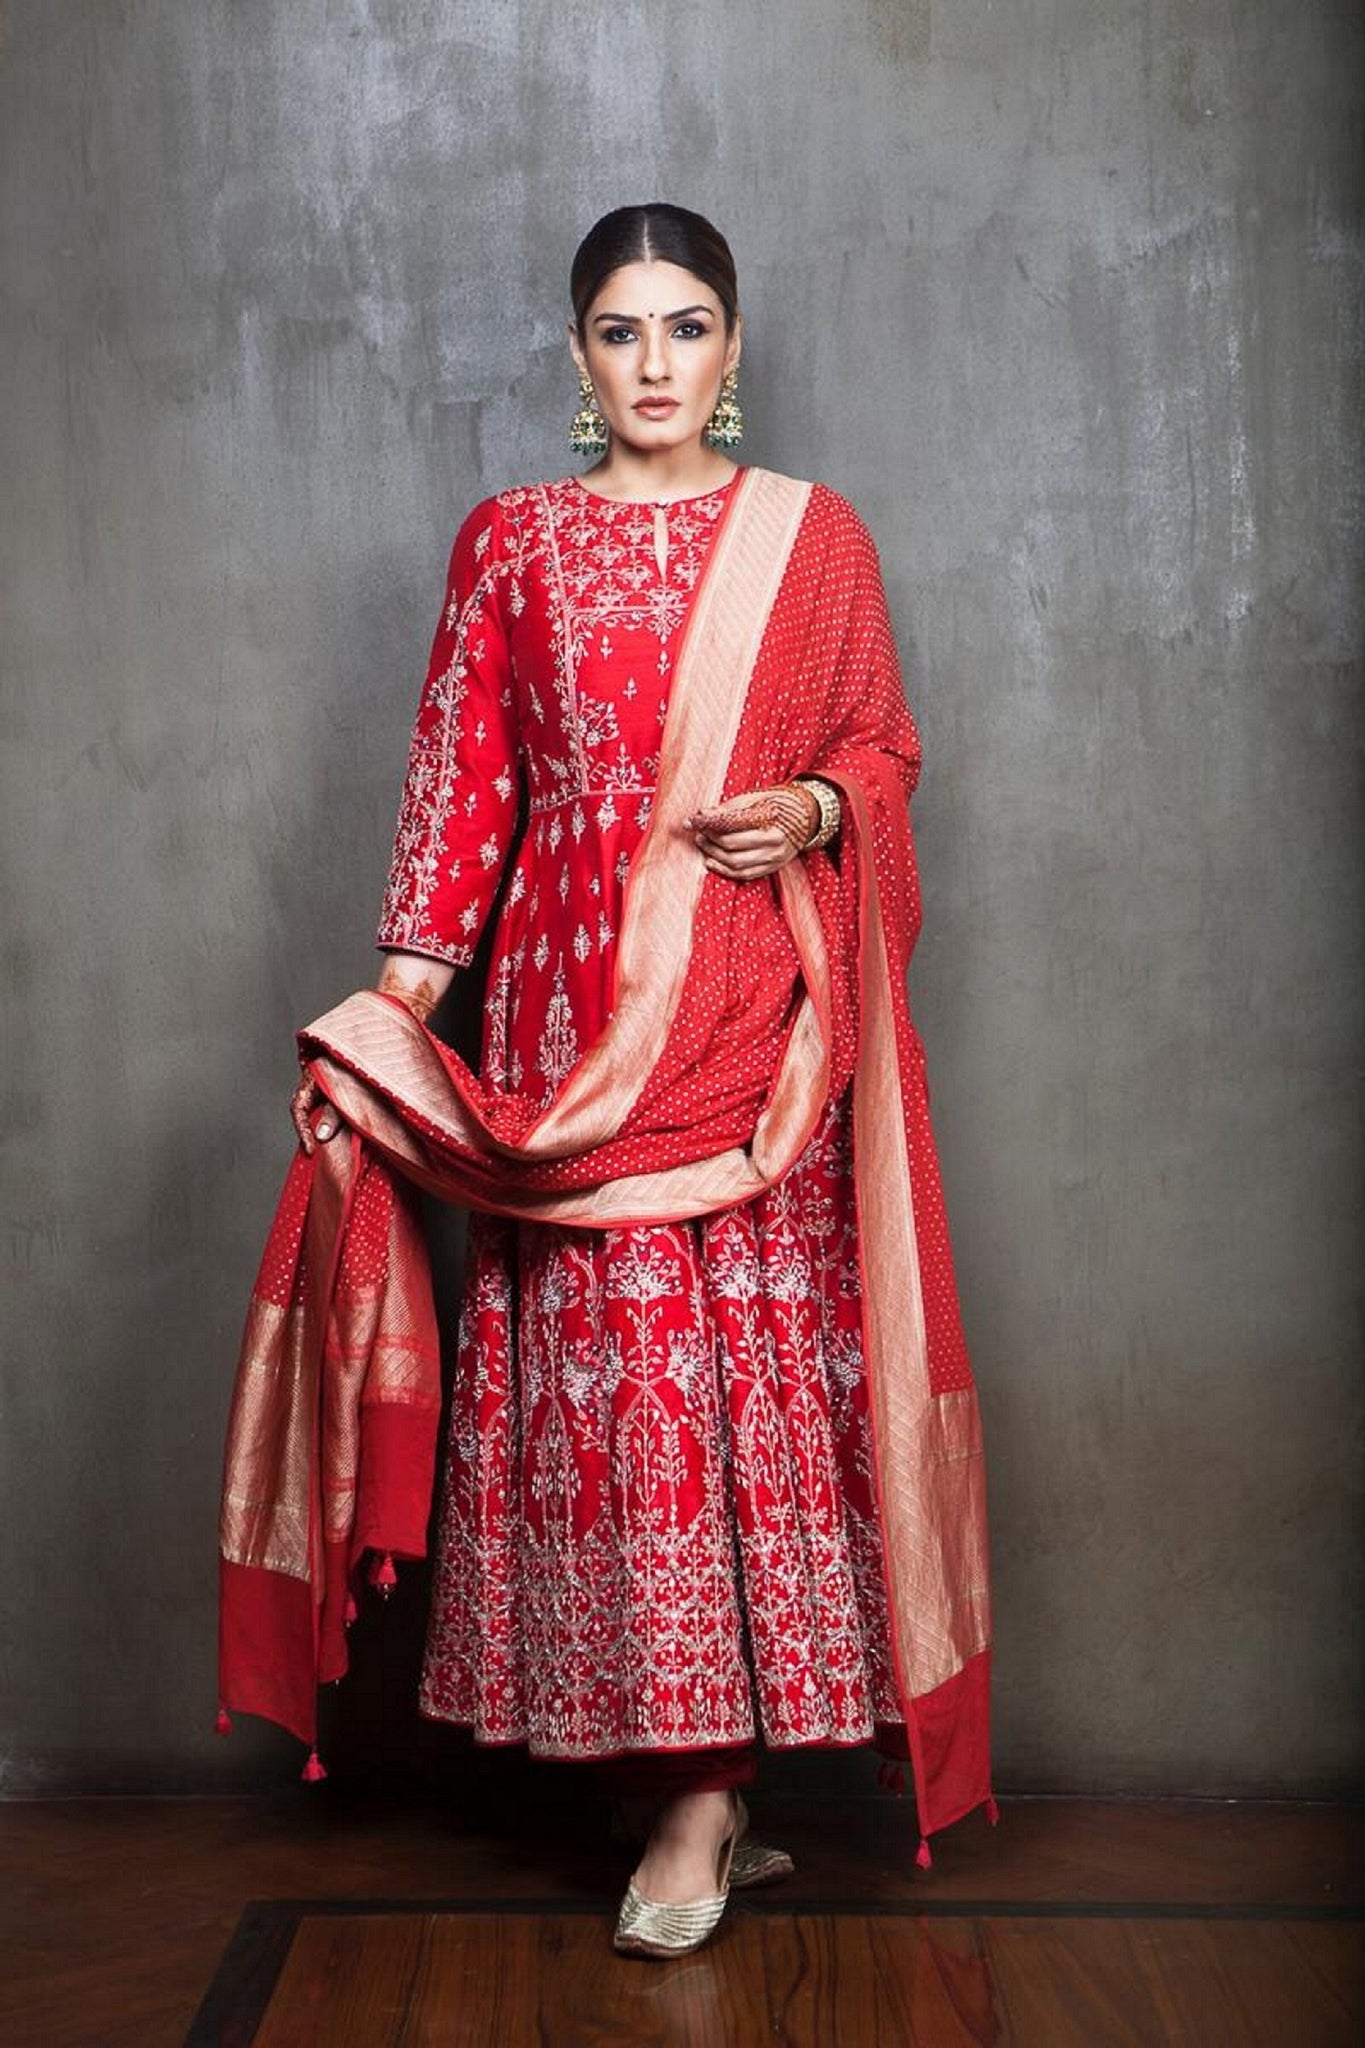 Raveena Tandon in Anita Dongre's Red Anarkali Suit